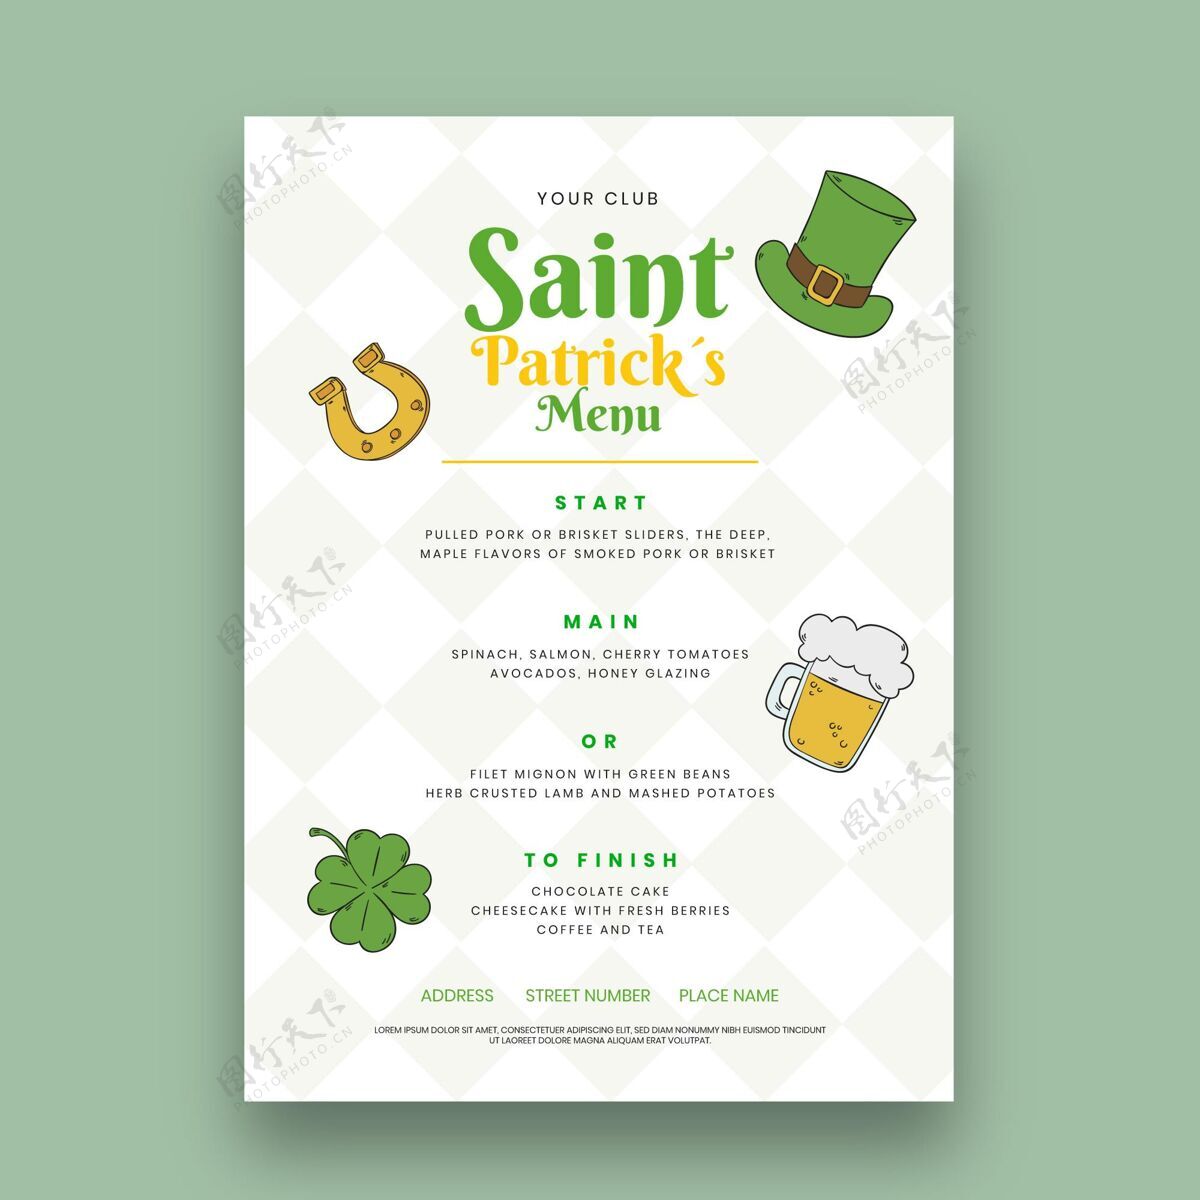 模板手绘圣帕特里克节垂直菜单模板3月17日圣帕特里克圣帕特里克日